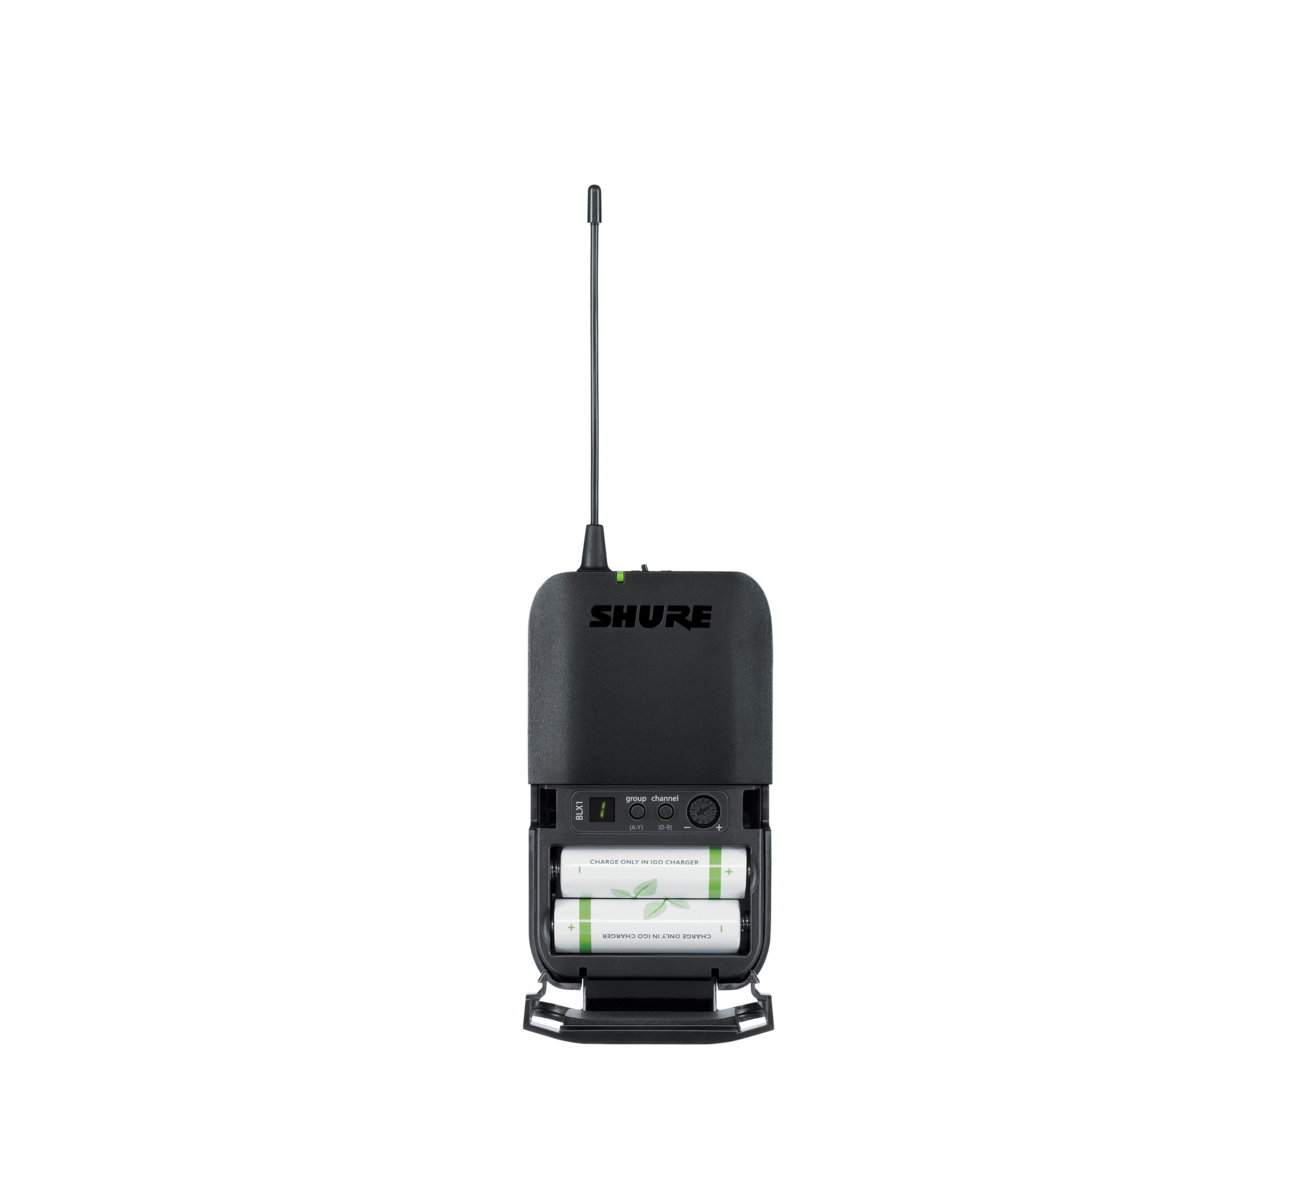 SHURE BLX14/SM31 Sistema con micrófono de diadema cardioide para cantante, Fitness Transmisor de cuerpo ligero, Repelente a la humedad. 596 a 616 MHz